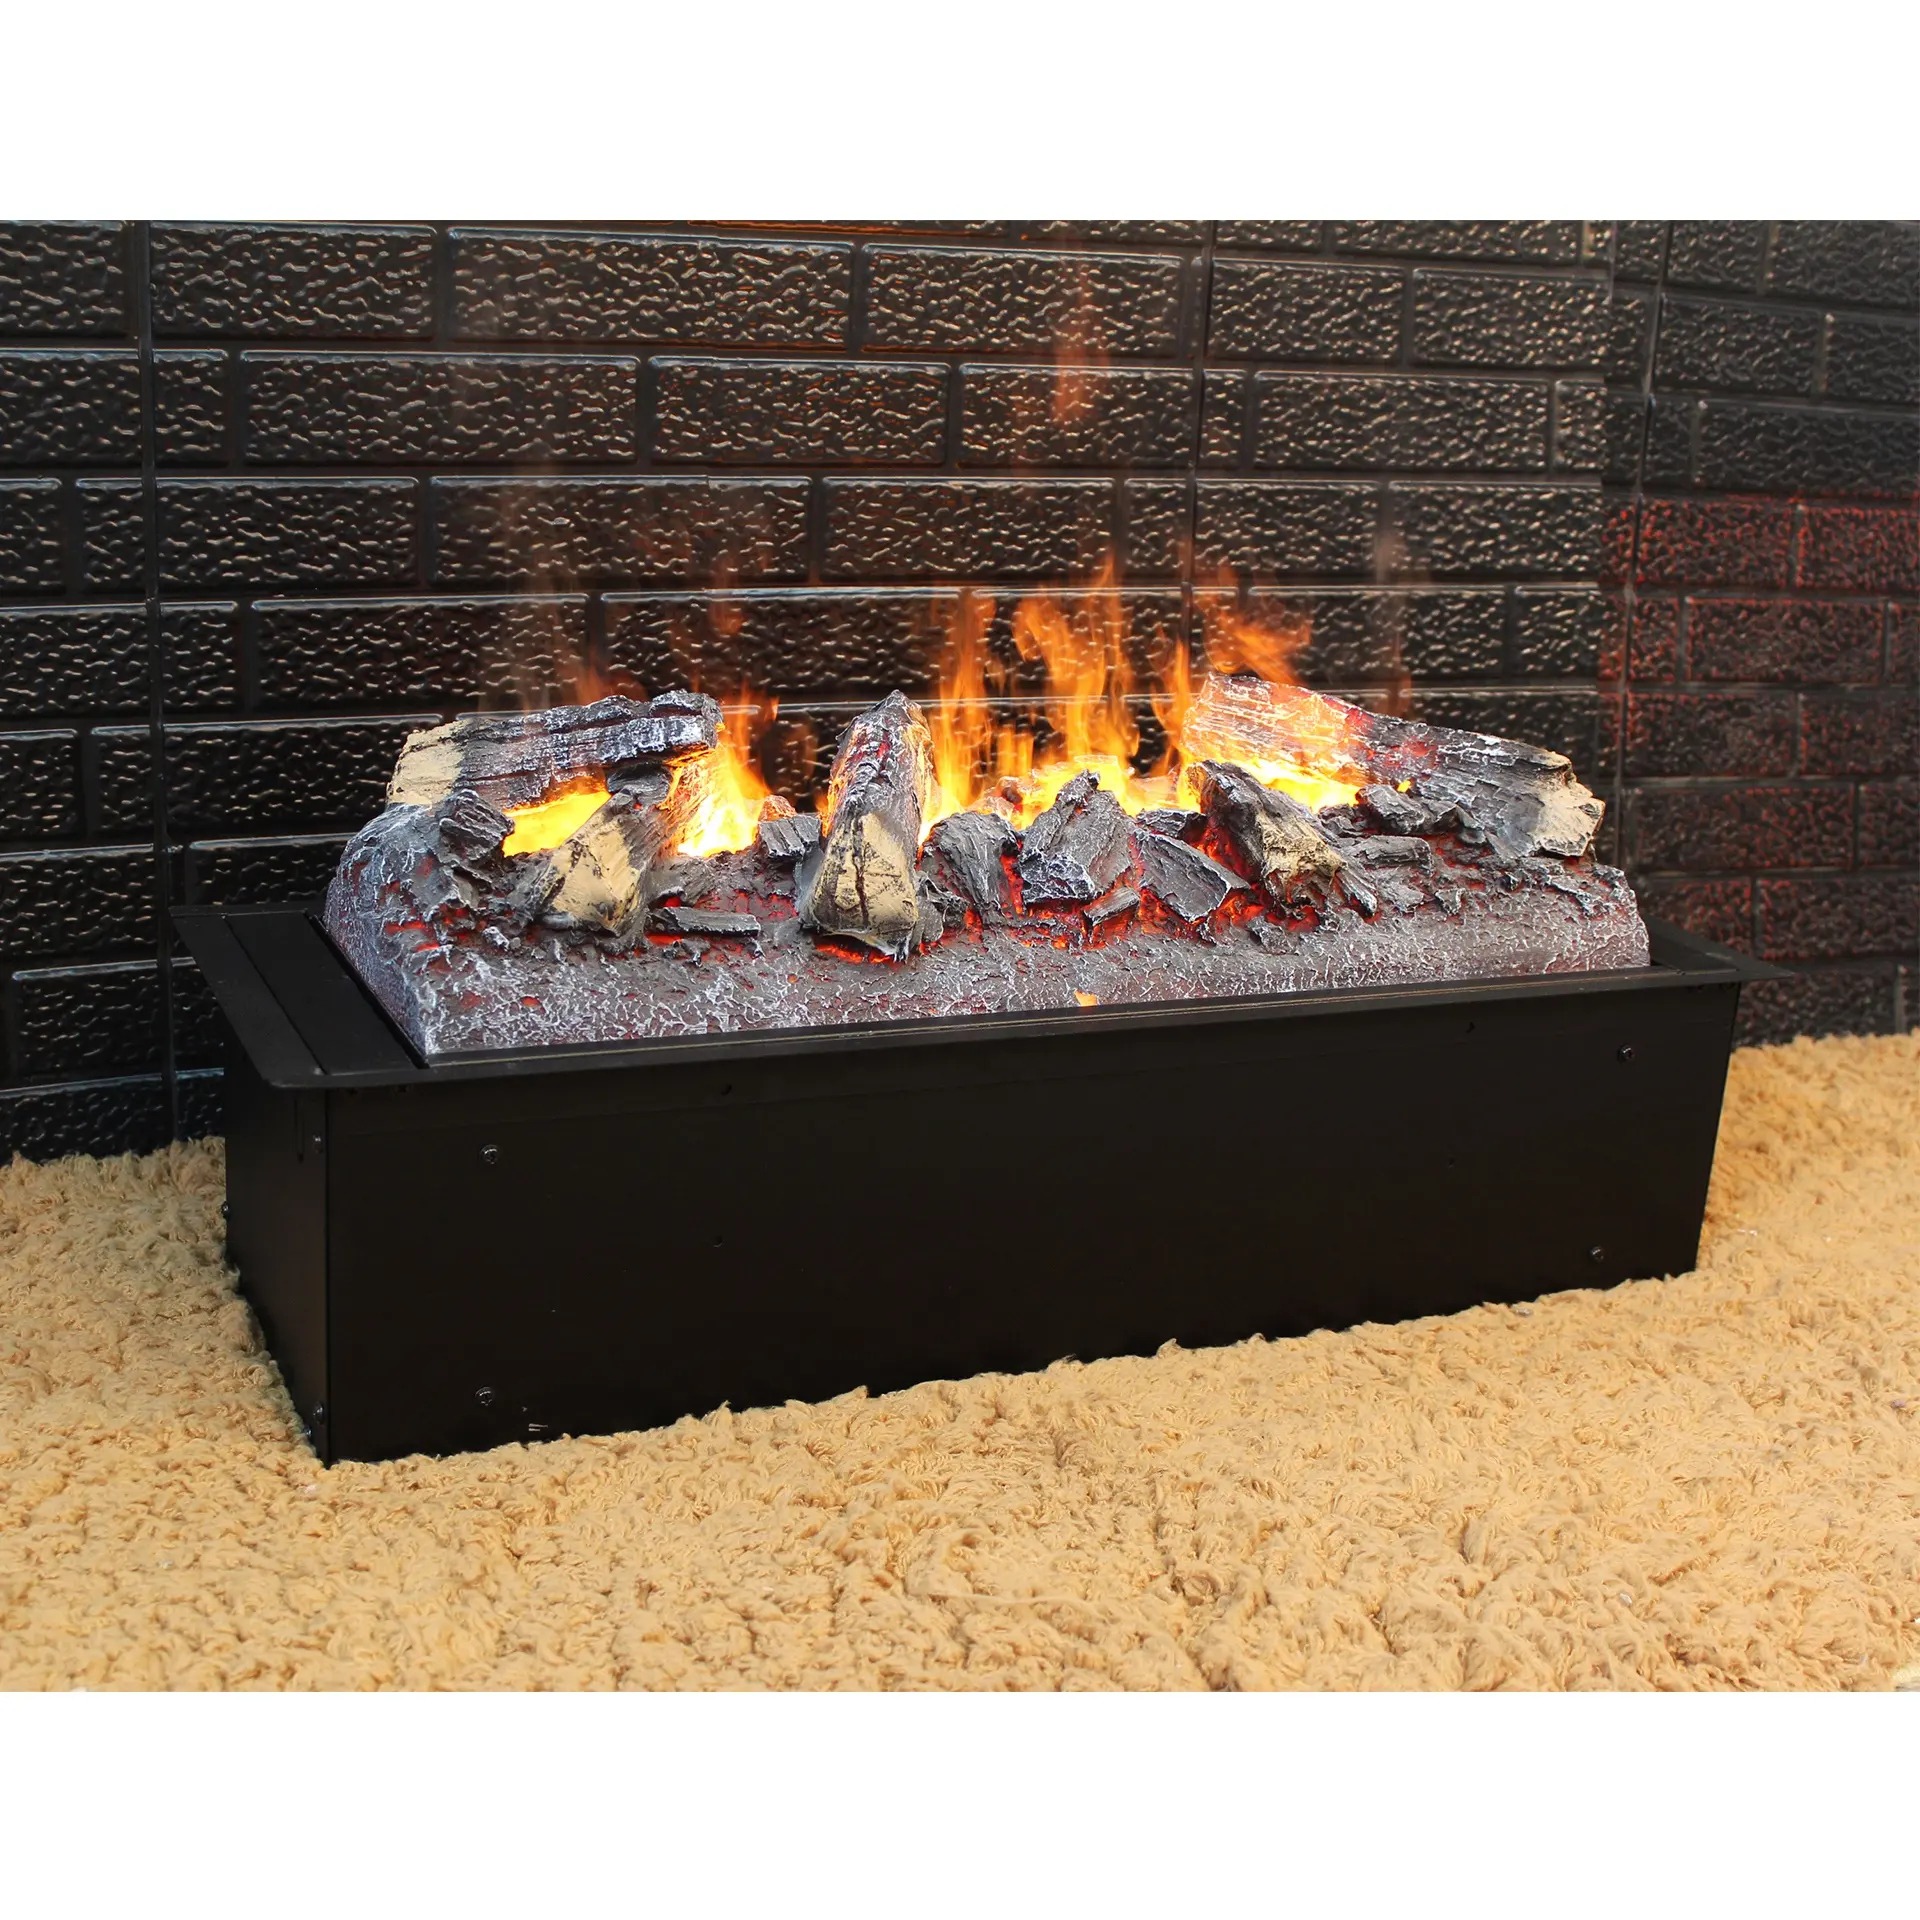 Water Vapor Fire Steam Fireplace Cassette 600mm Log Set Design Steam Flame Effect